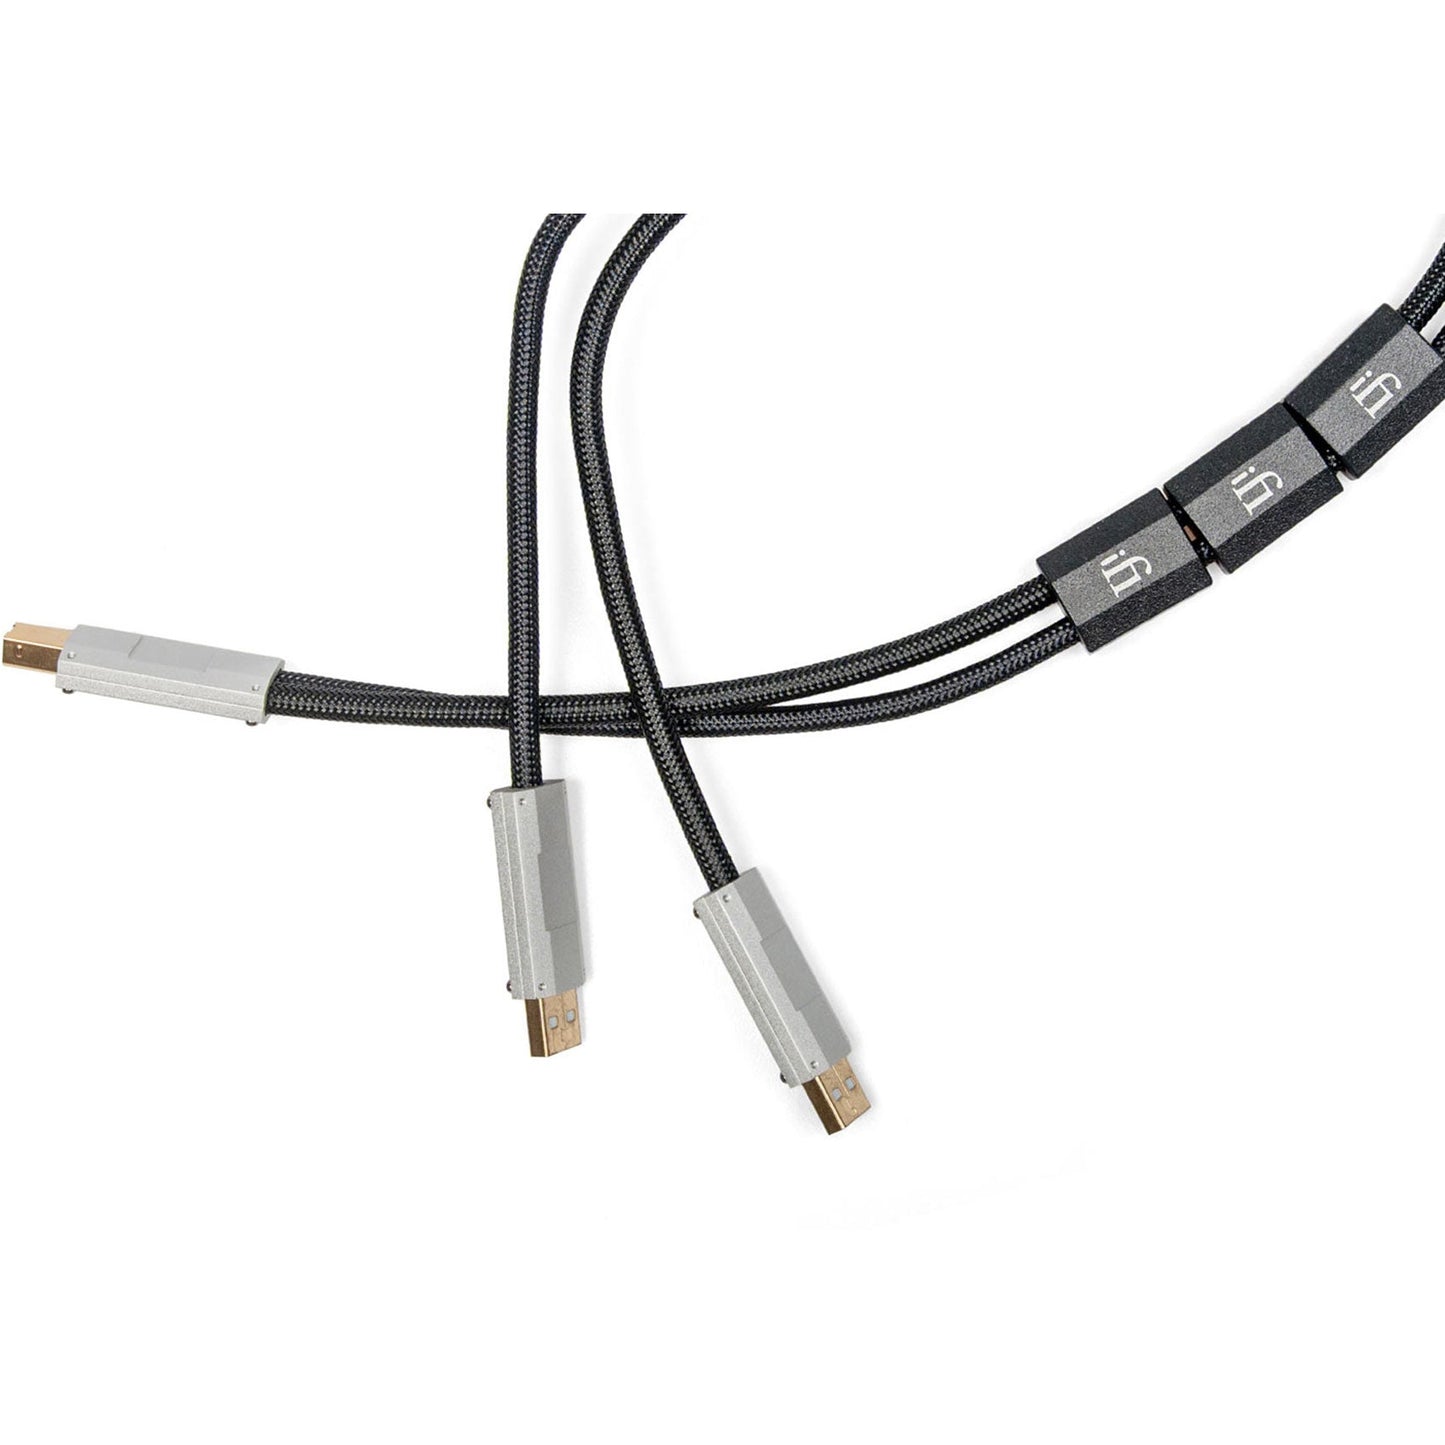 Ifi Gemini Cable